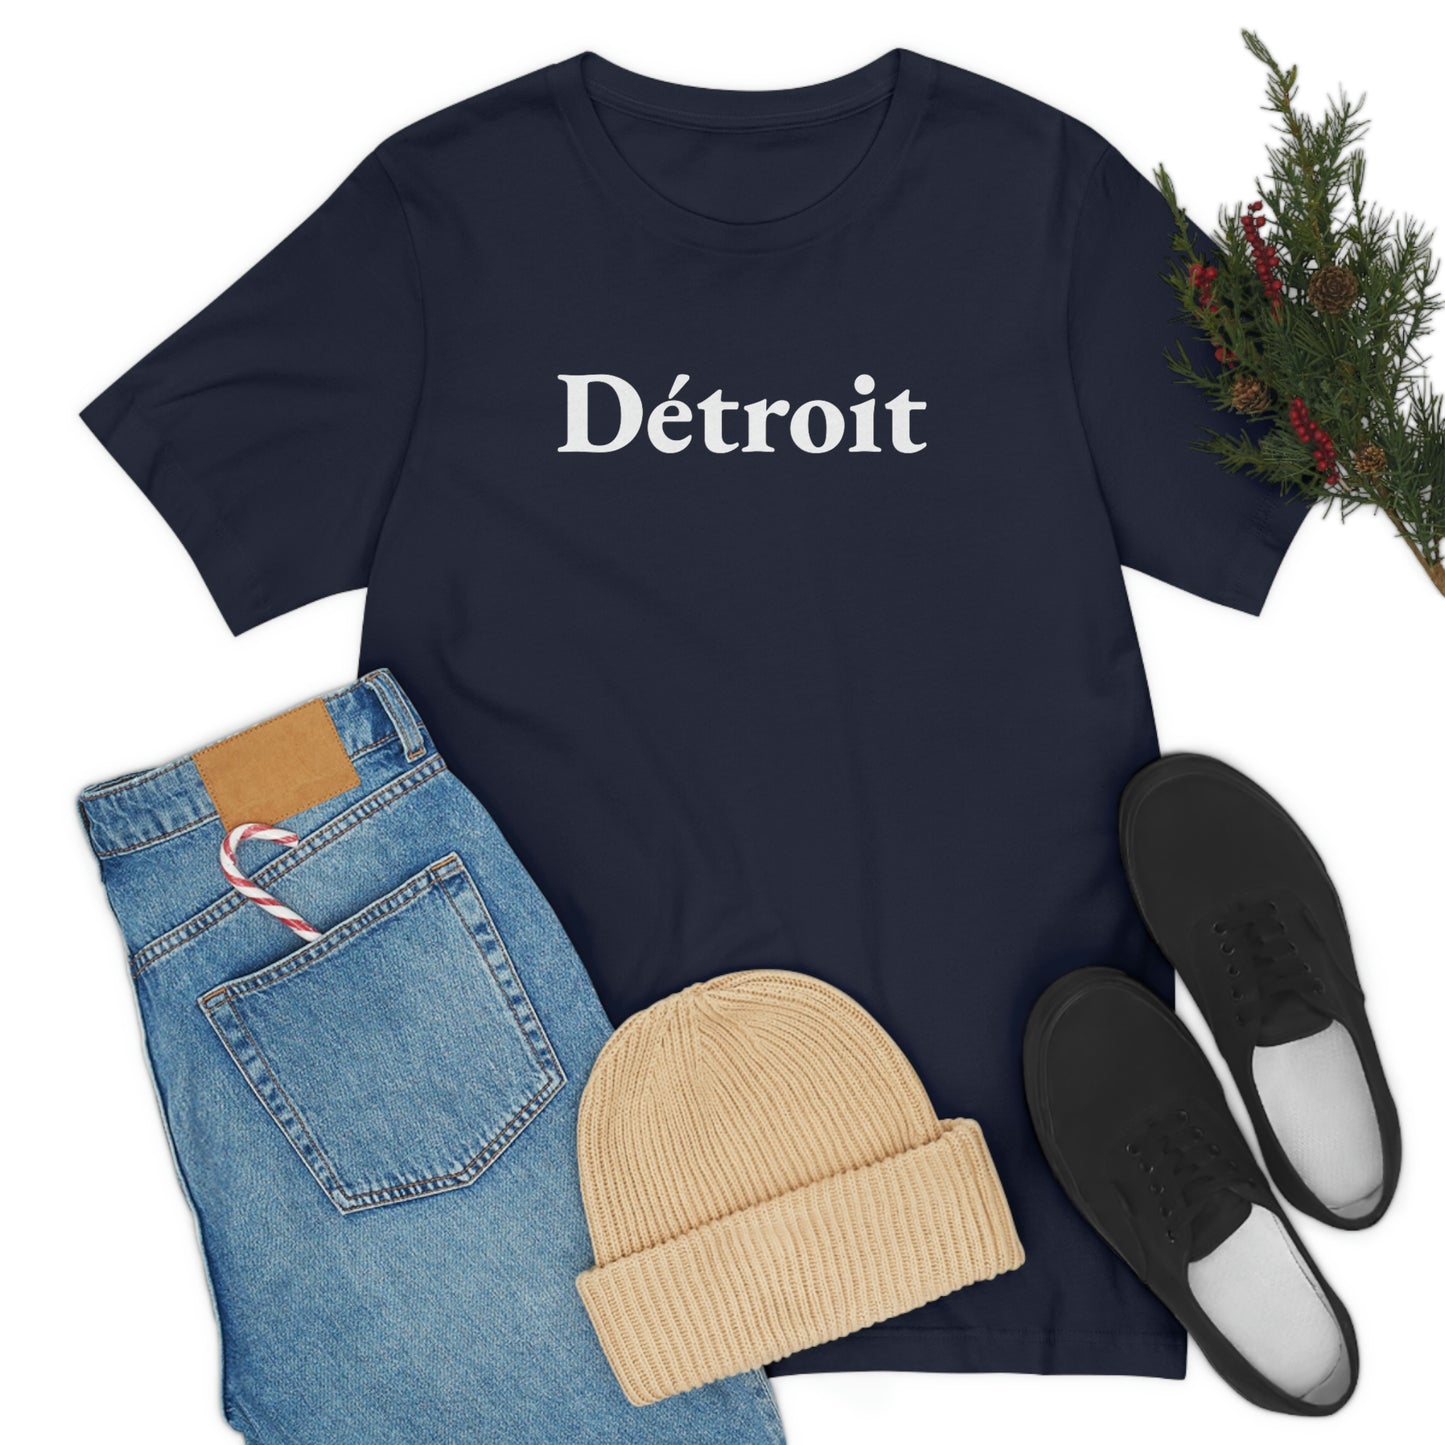 'Détroit' T-Shirt (Garamond Font) | Unisex Standard Fit